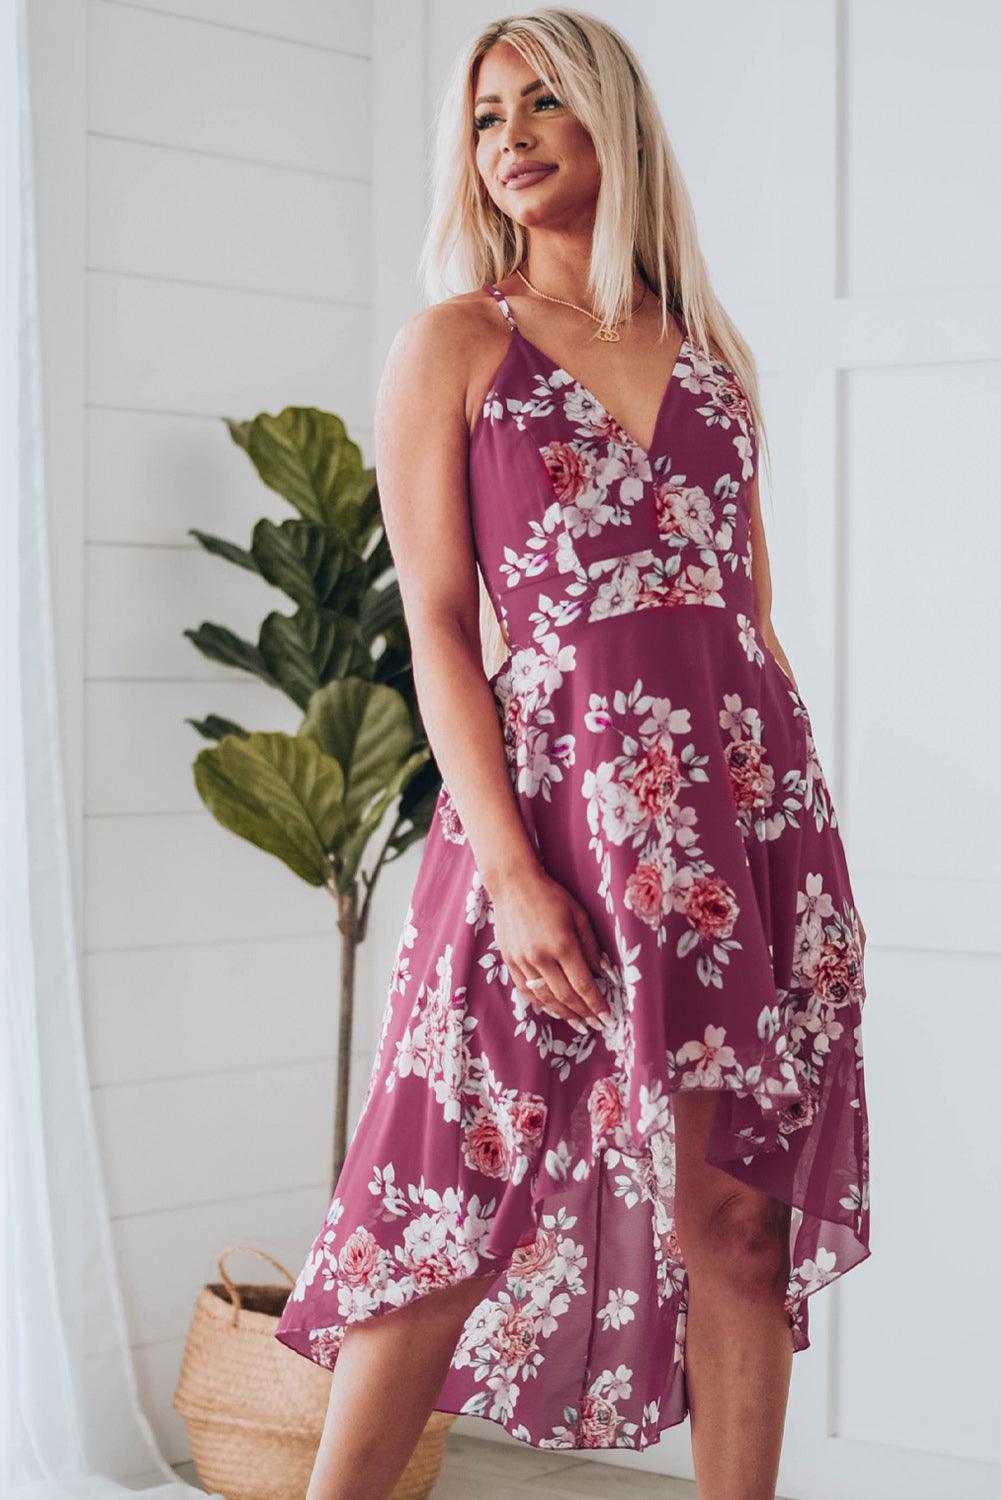 Floral Cutout High-Low Lace Back Dress - LaLa D&C